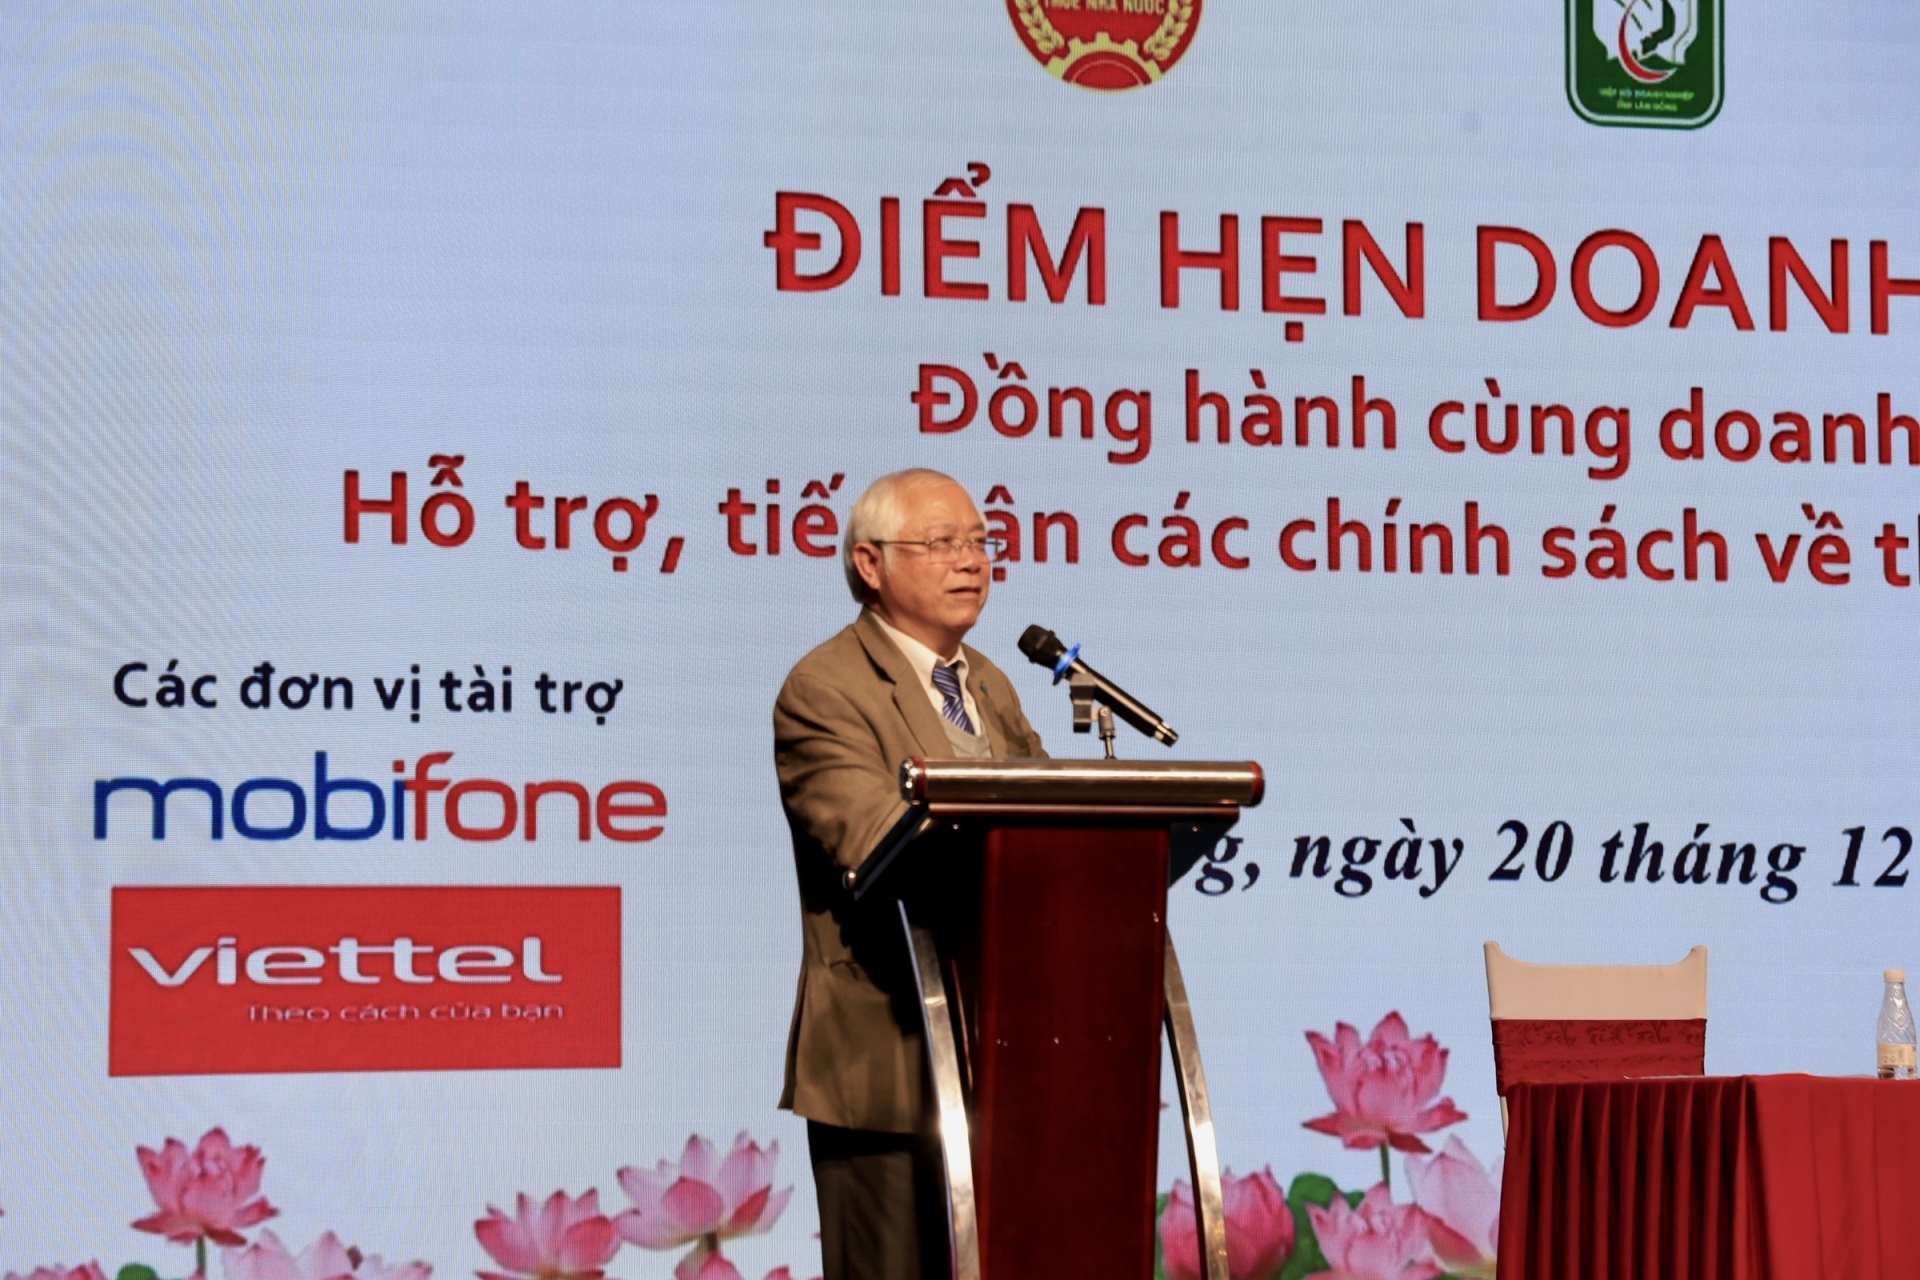 Ông Đinh Minh Quý - Chủ tịch Hiệp hội Doanh nghiệp tổng kết Chương trình